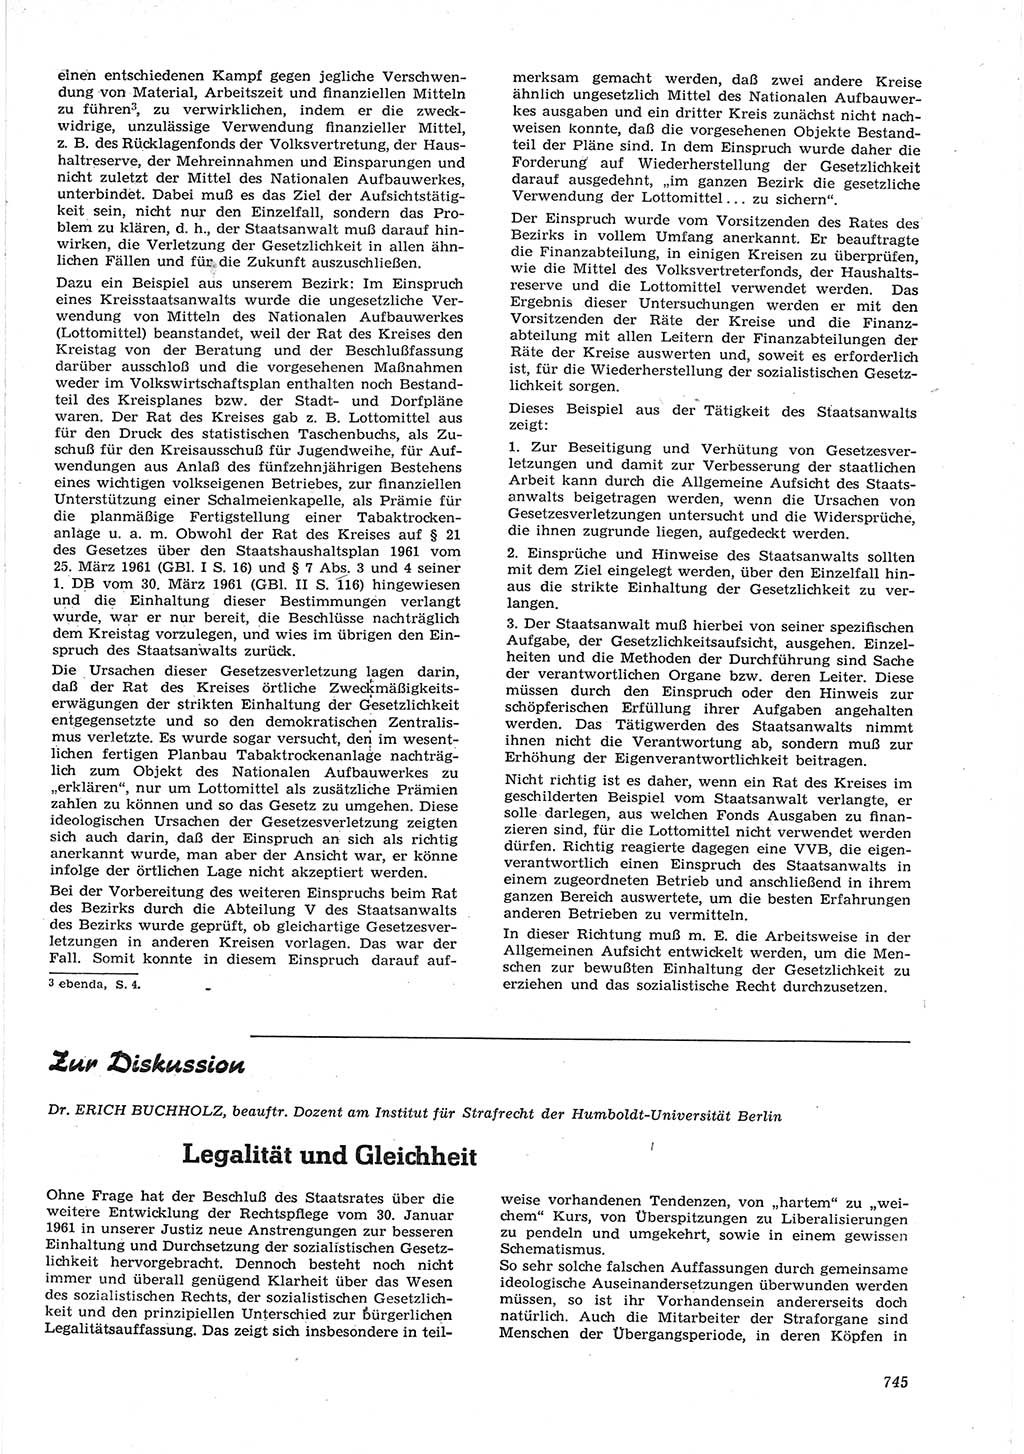 Neue Justiz (NJ), Zeitschrift für Recht und Rechtswissenschaft [Deutsche Demokratische Republik (DDR)], 15. Jahrgang 1961, Seite 745 (NJ DDR 1961, S. 745)